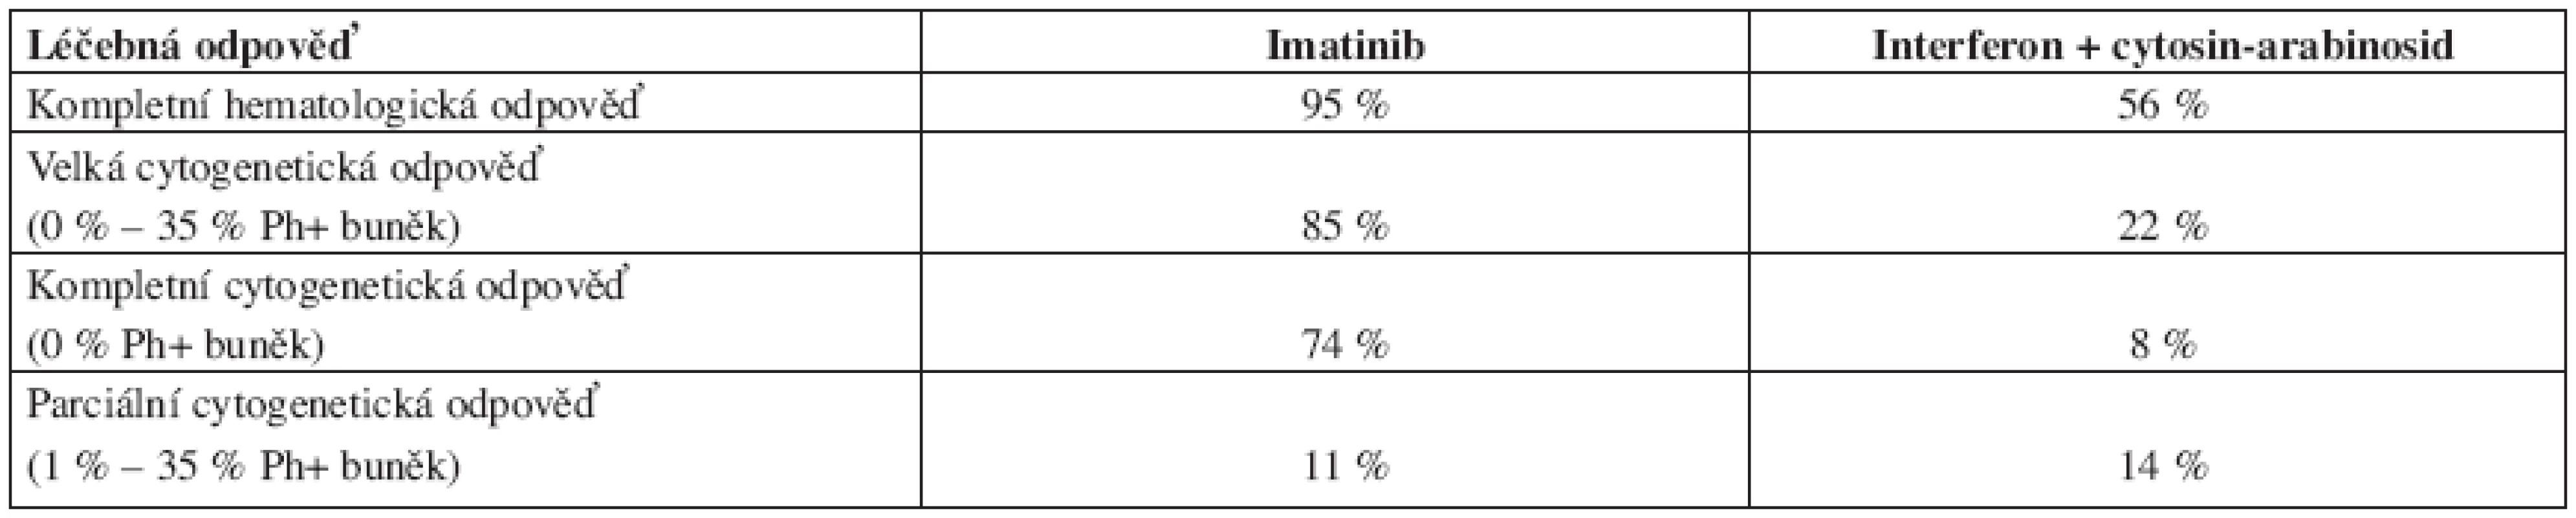 Srovnání léčebných odpovědí po terapii imatinibem a kombinované léčbě interferon alfa + cytosin-arabinosid podle výsledků IRIS studie.